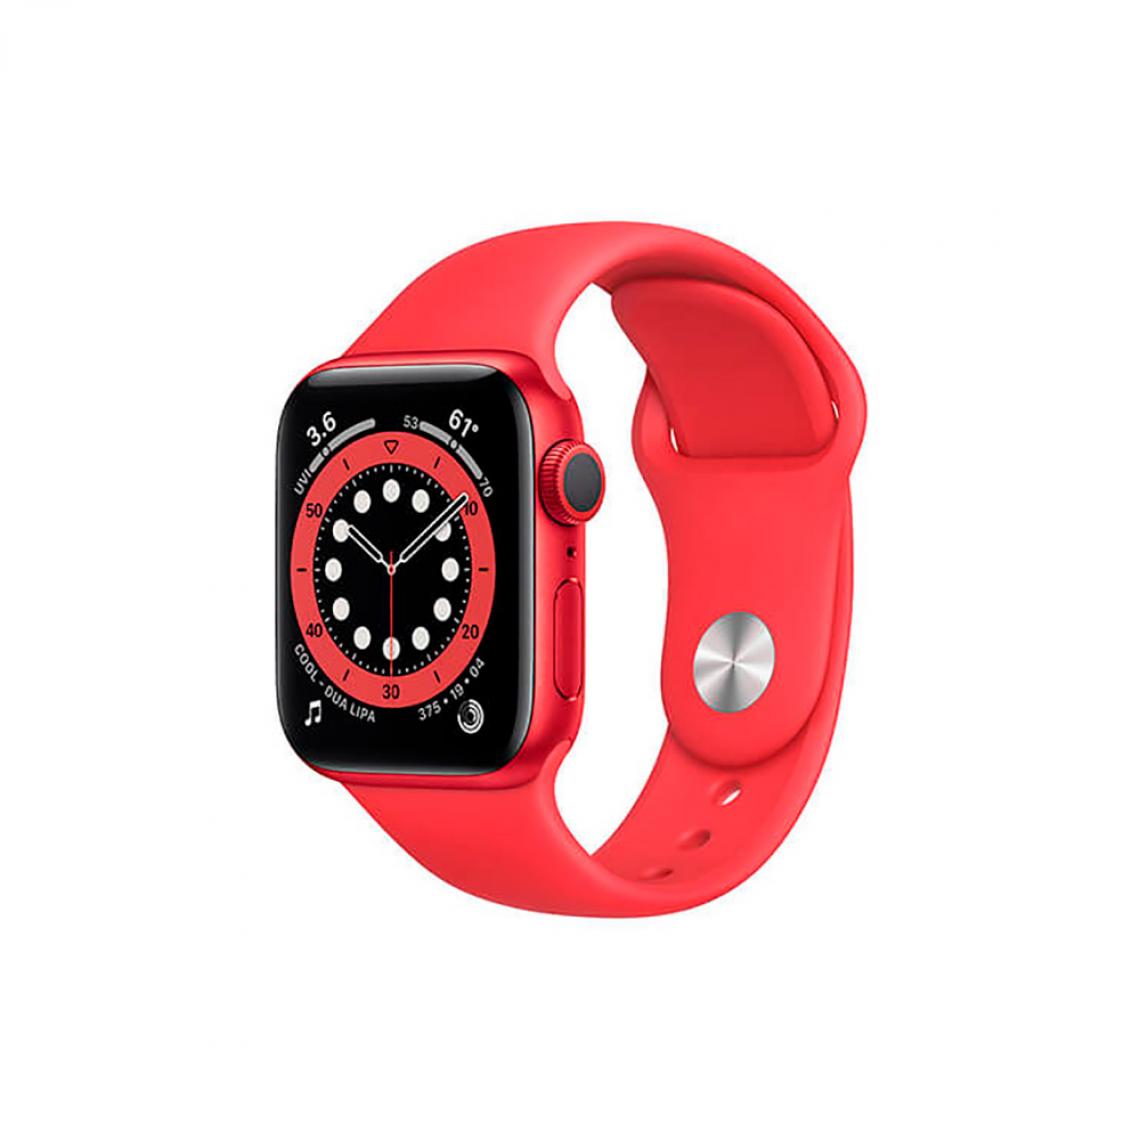 Apple - Apple Watch Series 6 (GPS + Cellulaire), 40mm Aluminium Rouge et bracelet sportif Rouge - Apple Watch